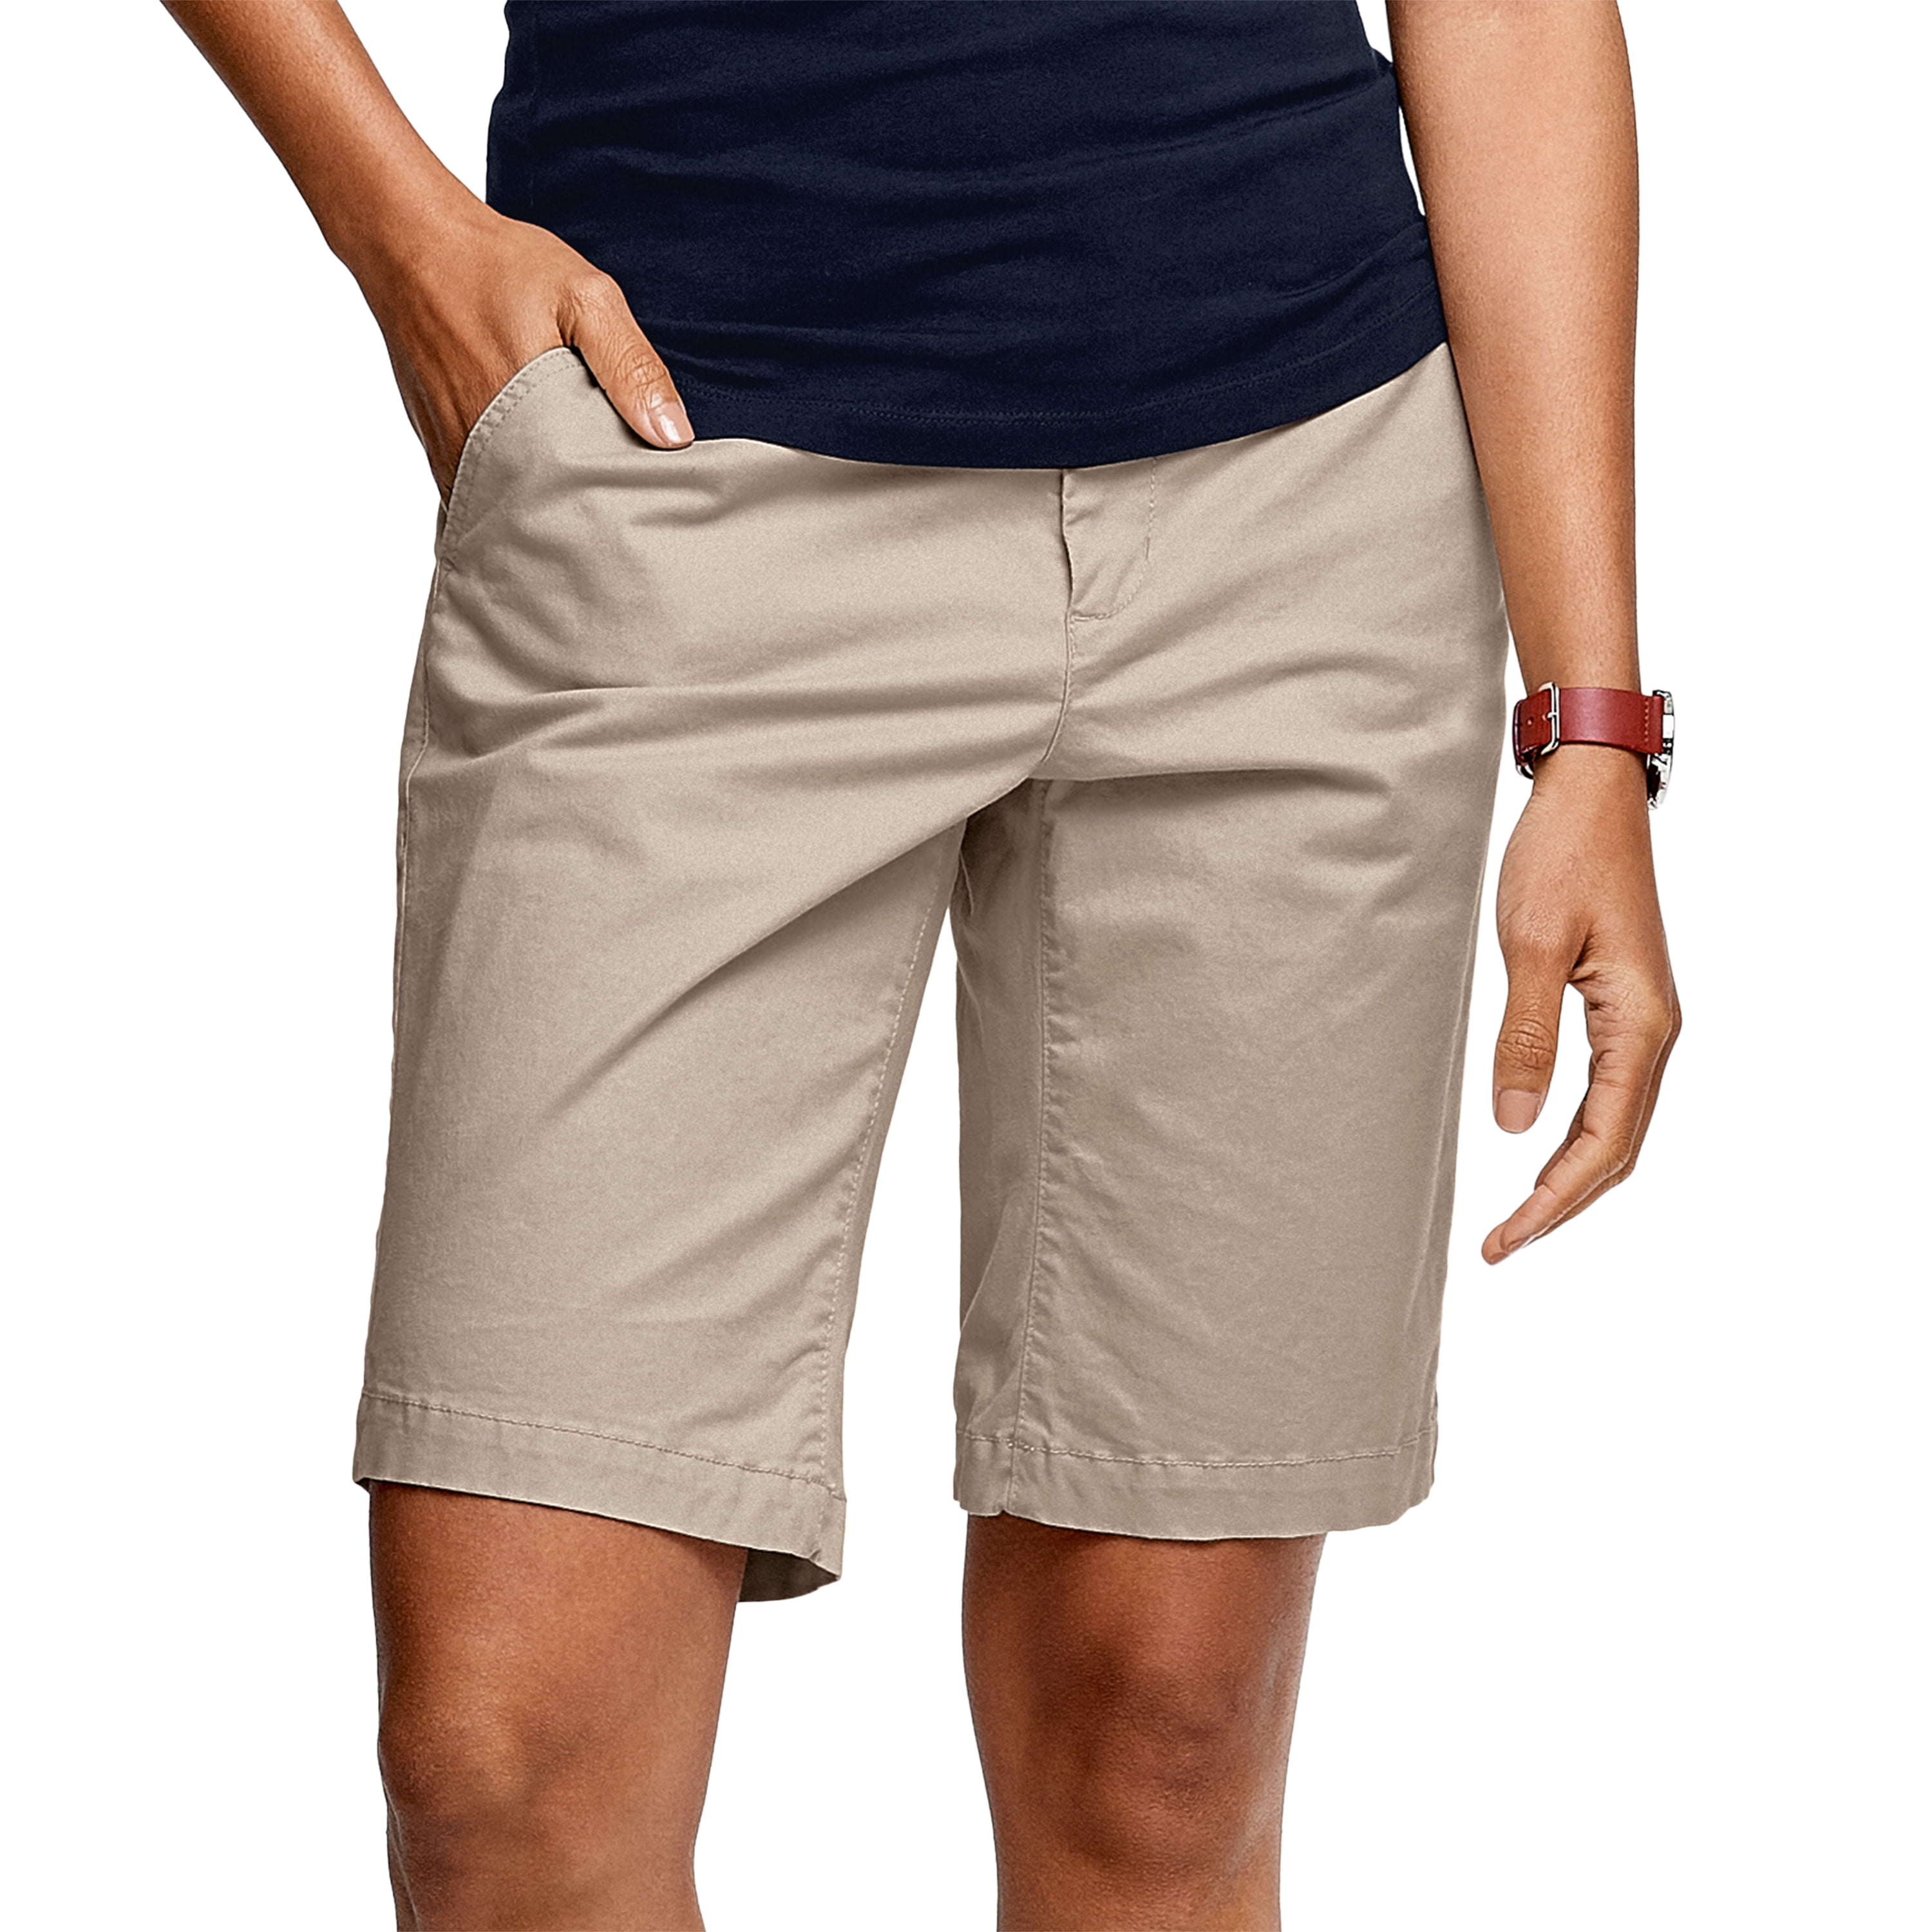 Ellos - Ellos Women's Plus Size Bermuda Shorts Shorts - Walmart.com ...